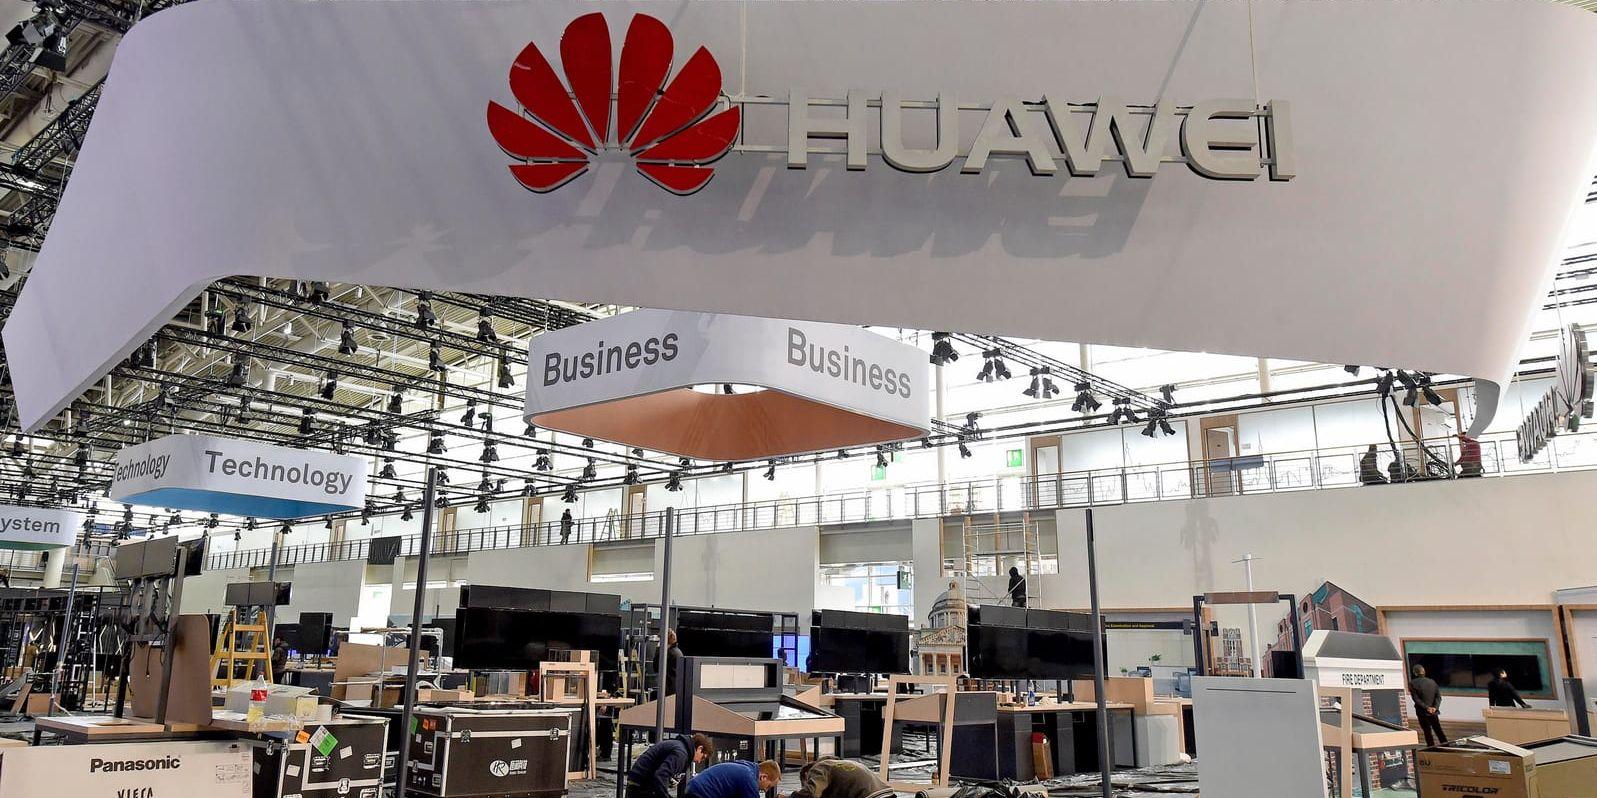 De båda stora amerikanska teleoperatörerna har de senaste veckorna sagt nej till kinesiska Huawei. Enligt nyhetsbyrån Bloomberg har det skett efter påtryckningar från USA:s regering.